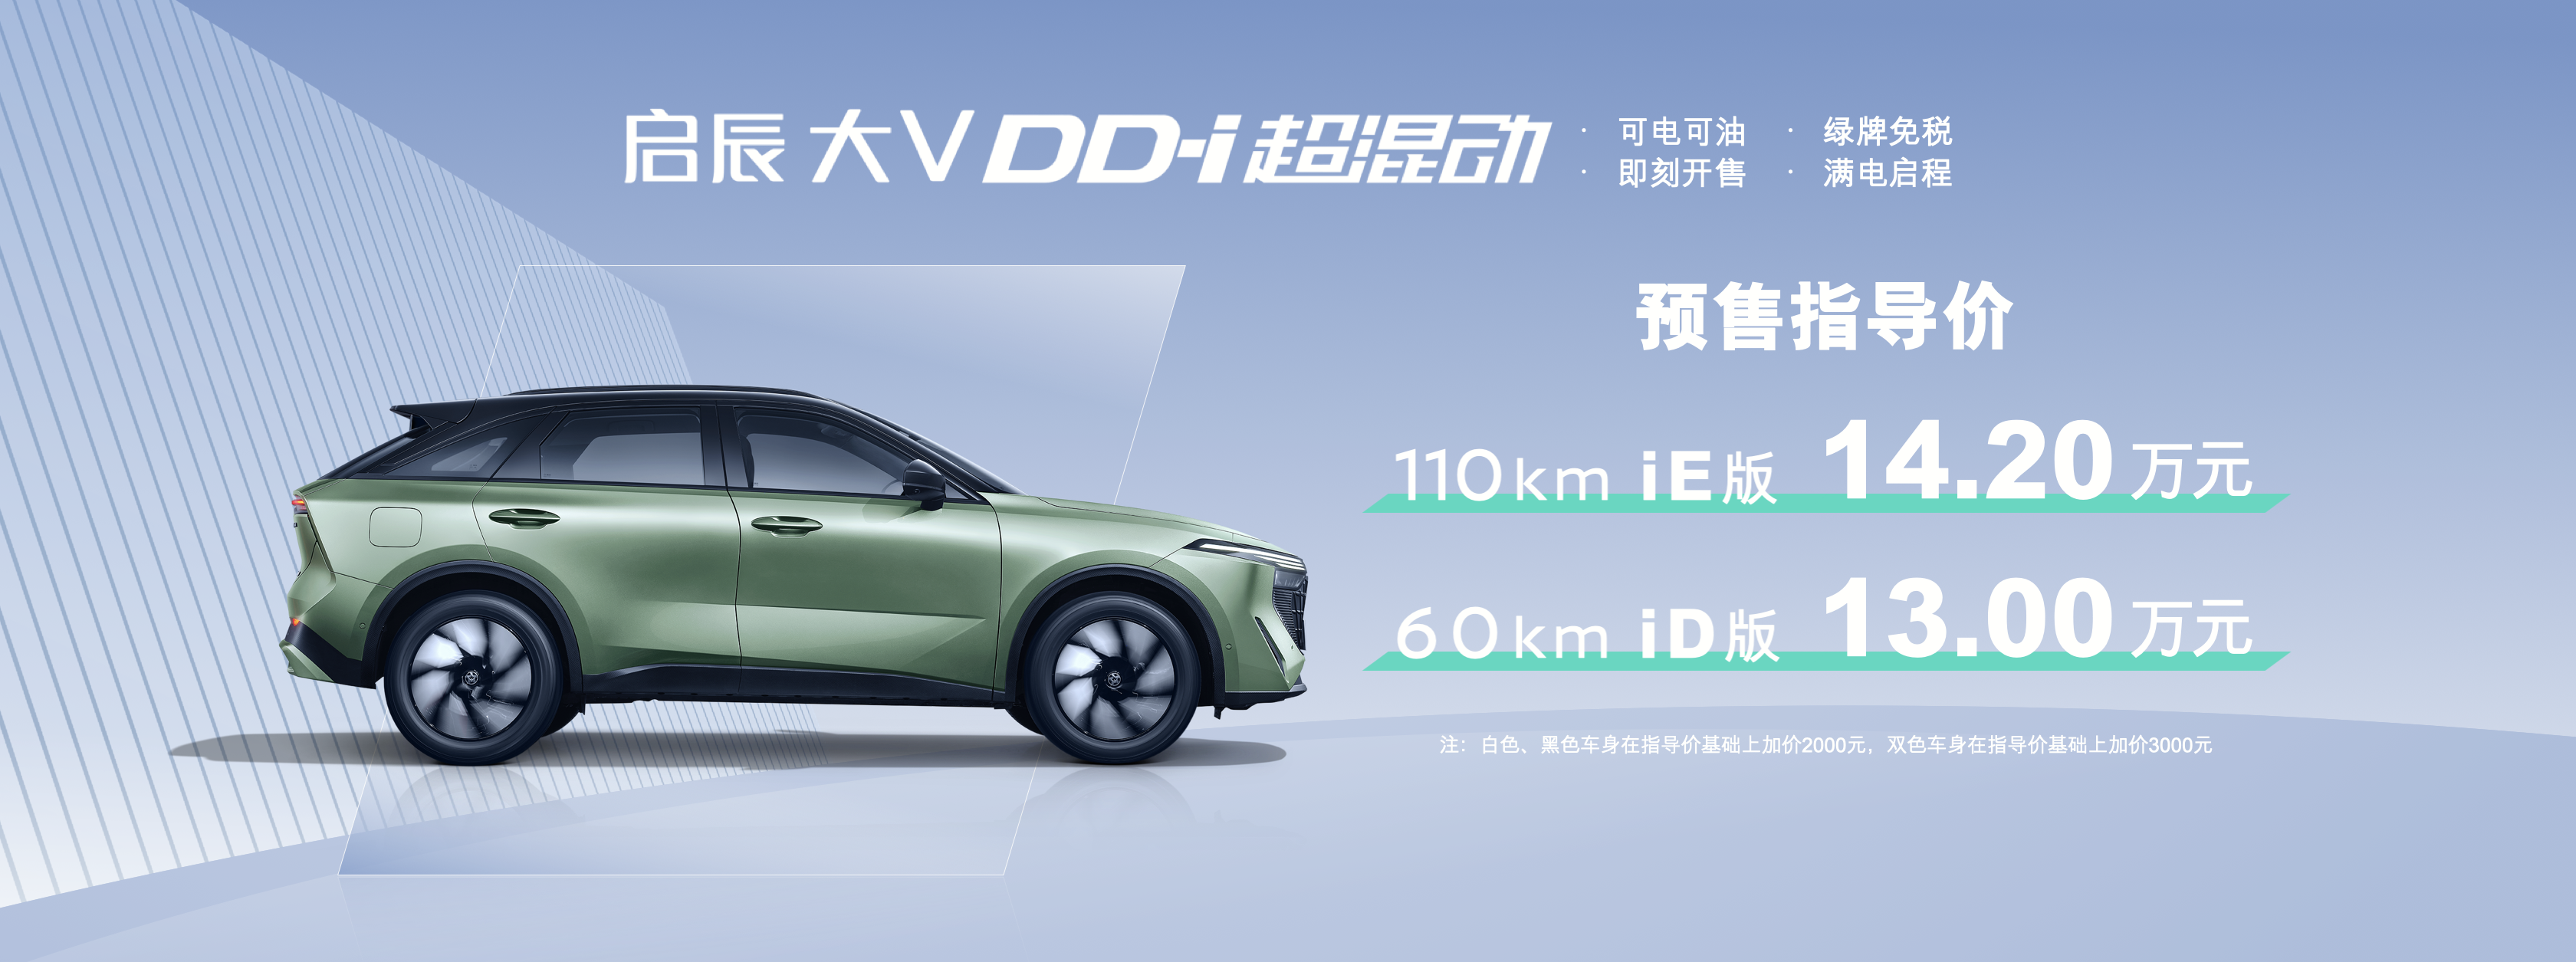 东风日产首款PHEV车型正式预售，启辰大V DD-i“混”得可还行？